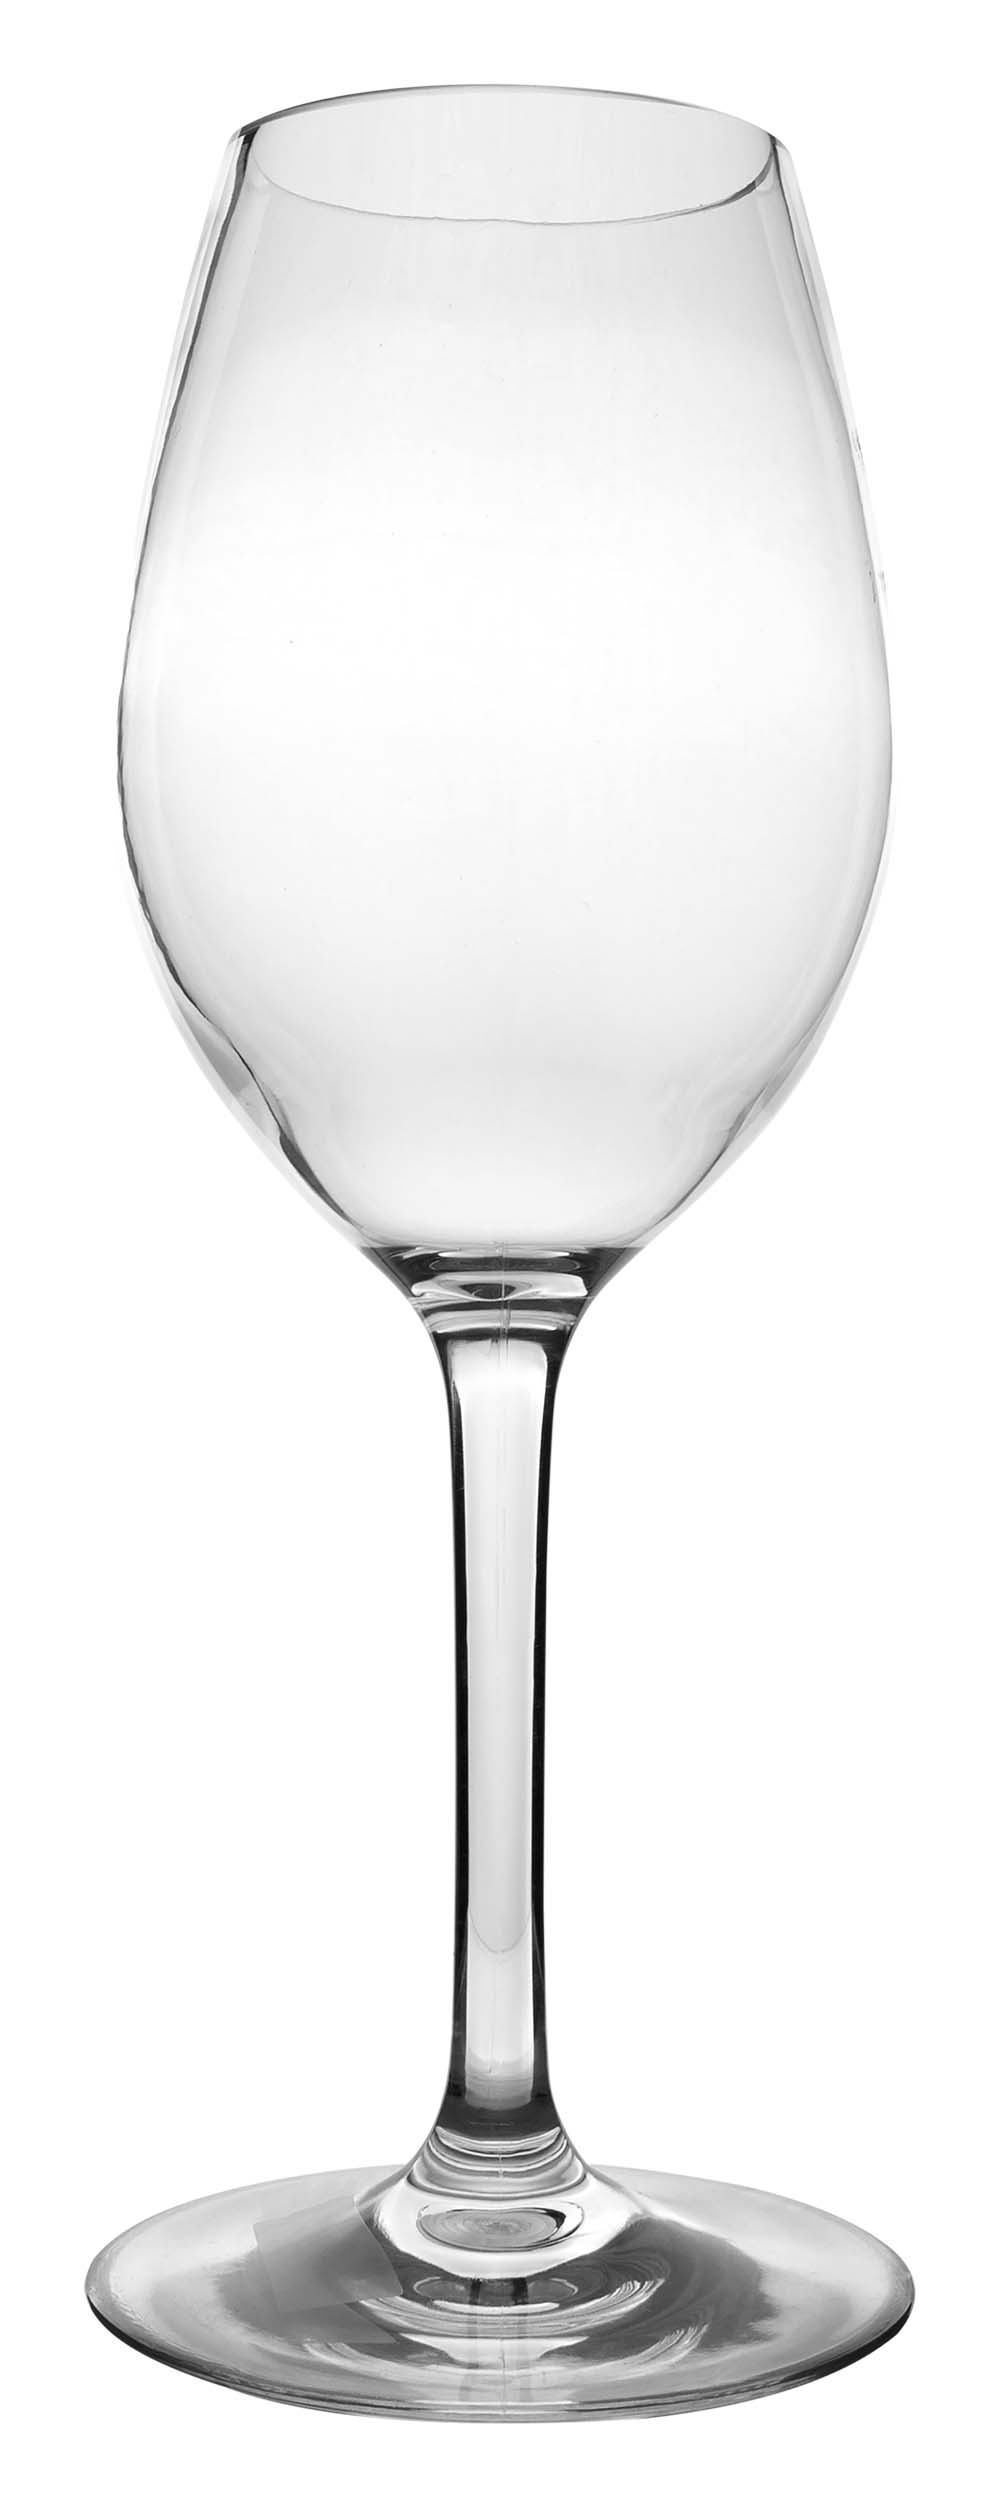 6101460 Un juego de copas de vino blanco extra resistente y lujoso. Fabricadas 100% en tritán. Esto hace que las gafas sean casi irrompibles, ligeras y resistentes a los arañazos. Este vaso también es apto para lavavajillas. El vaso no contiene BPA.